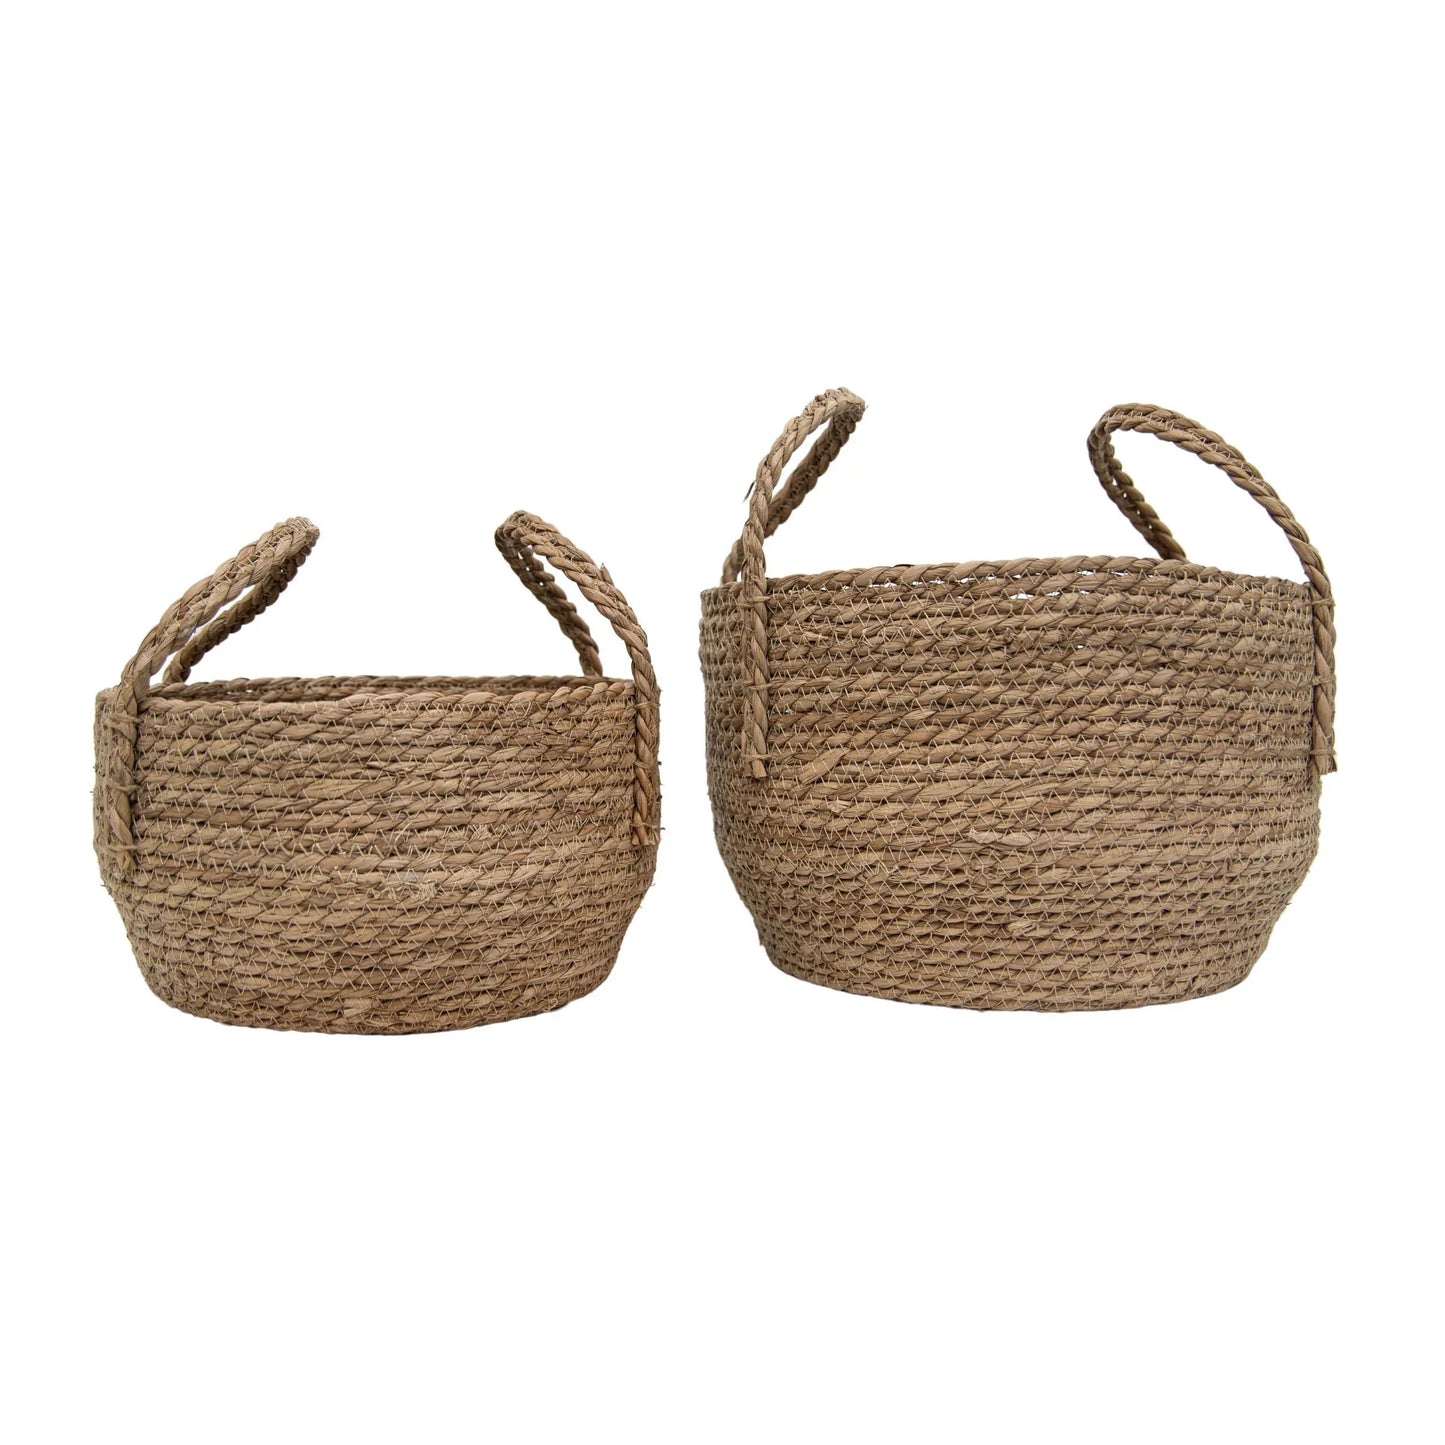 The Boho Woven Basket